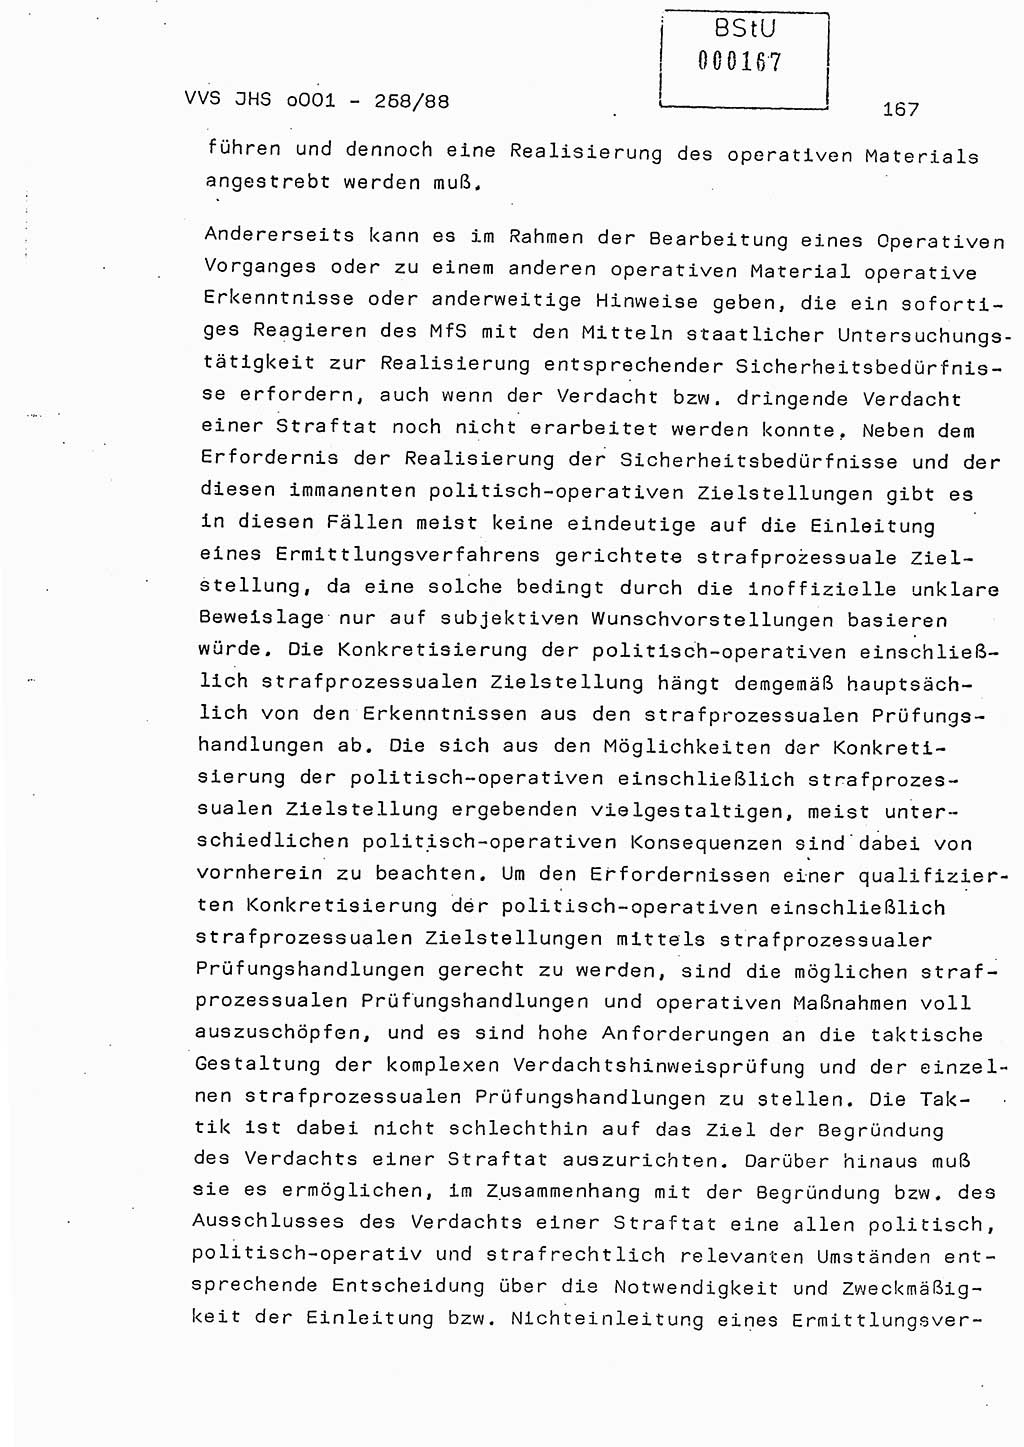 Dissertation, Oberleutnant Uwe Kärsten (JHS), Hauptmann Dr. Joachim Henkel (JHS), Oberstleutnant Werner Mählitz (Leiter der Abt. Ⅸ BV Rostock), Oberstleutnant Jürgen Tröge (HA Ⅸ/AKG), Oberstleutnant Winfried Ziegler (HA Ⅸ/9), Major Wolf-Rüdiger Wurzler (JHS), Ministerium für Staatssicherheit (MfS) [Deutsche Demokratische Republik (DDR)], Juristische Hochschule (JHS), Vertrauliche Verschlußsache (VVS) o001-258/88, Potsdam 1988, Seite 167 (Diss. MfS DDR JHS VVS o001-258/88 1988, S. 167)